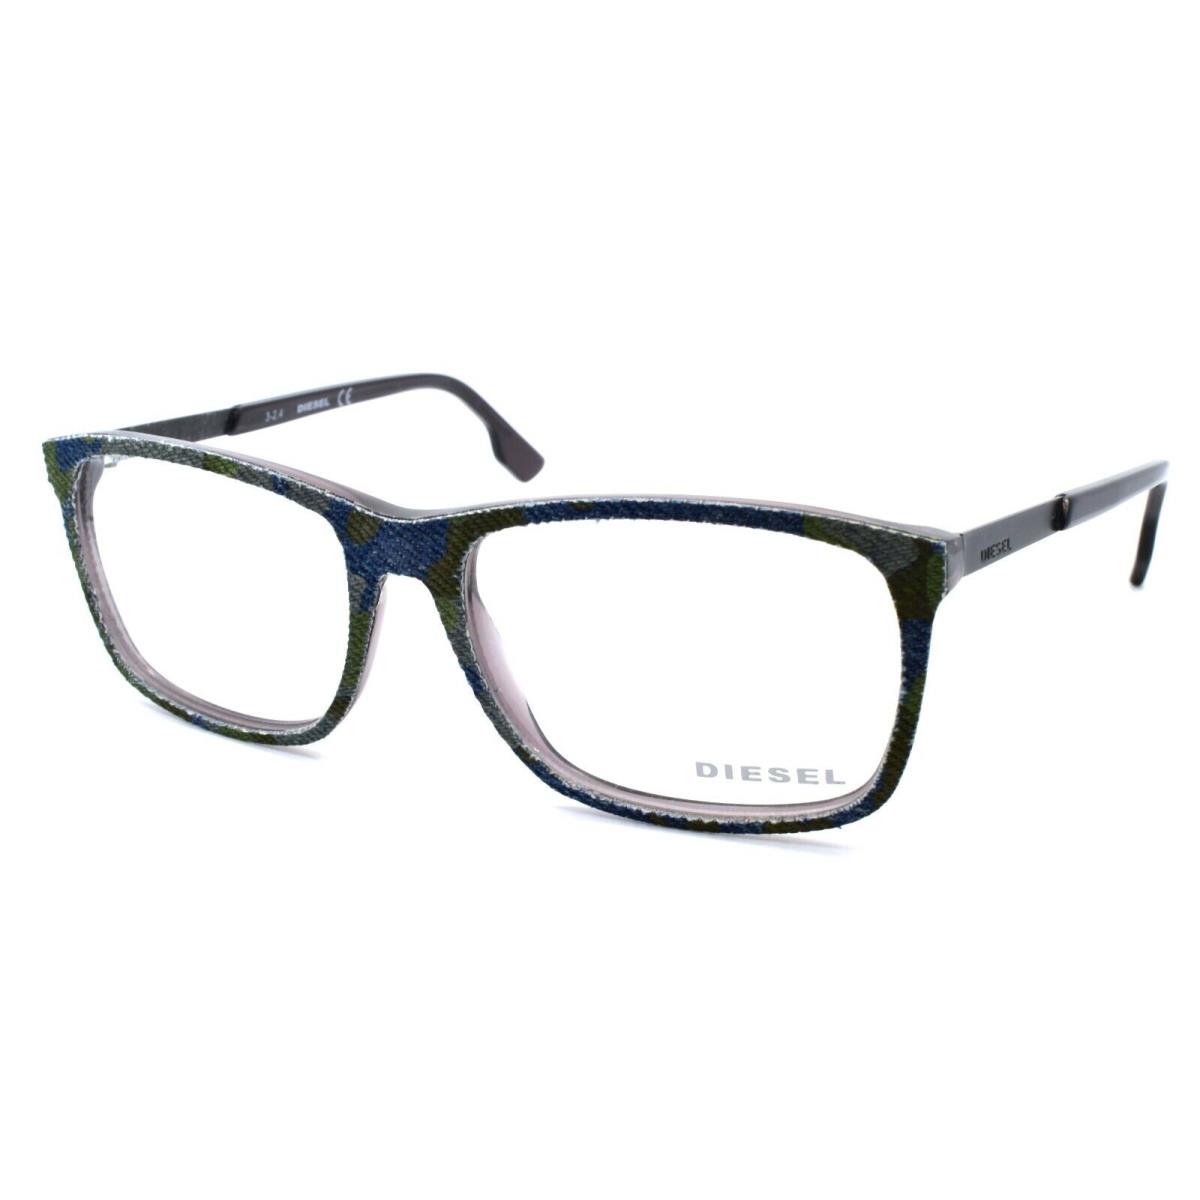 Diesel DL5166 003 Men`s Eyeglasses Frames 55-16-145 Spotted Denim / Grey